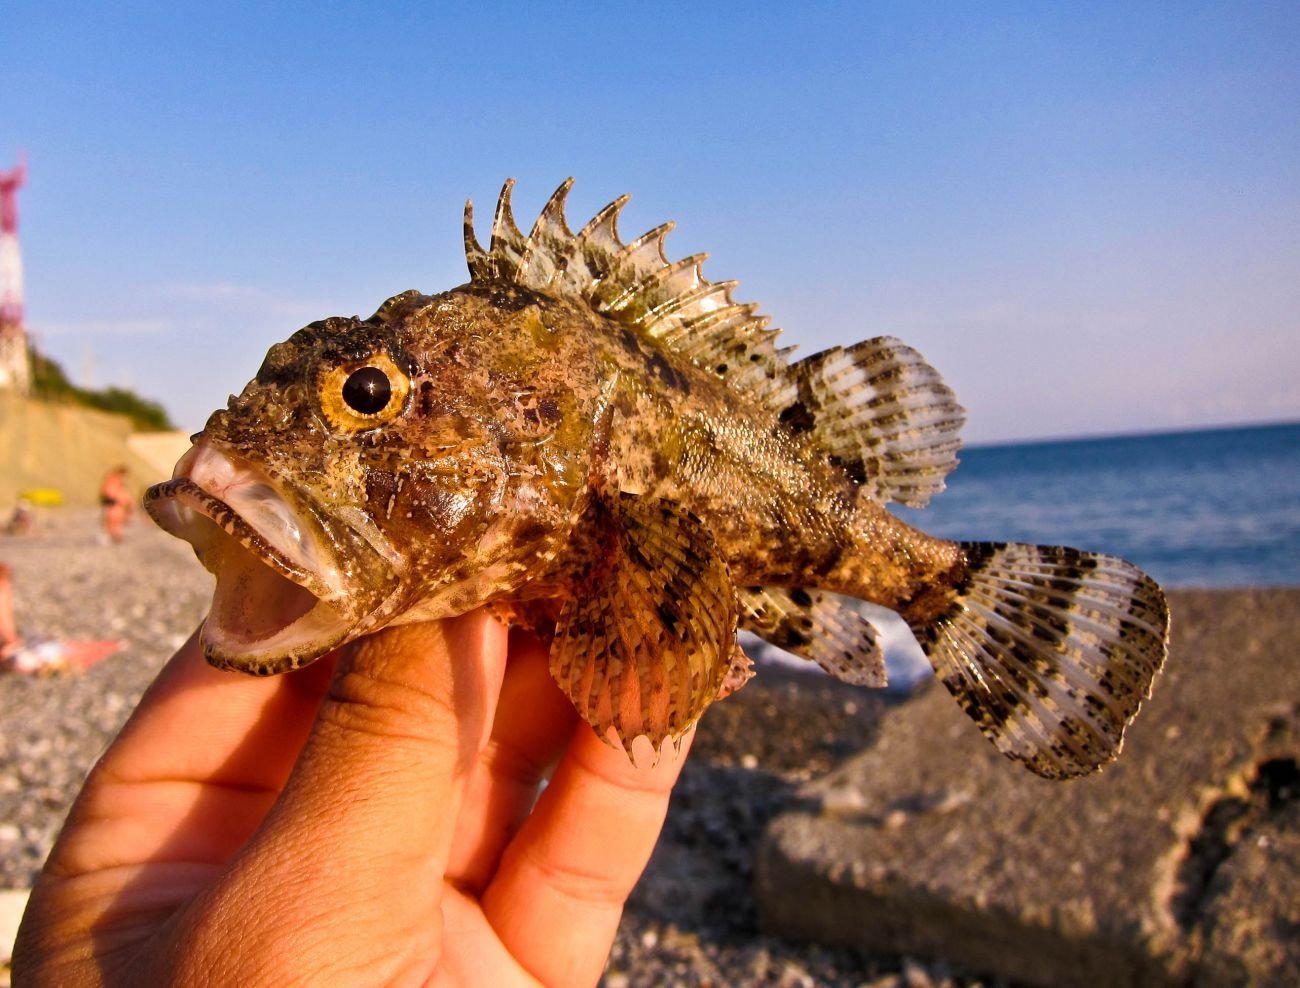 Крупные рыбы черного моря названия